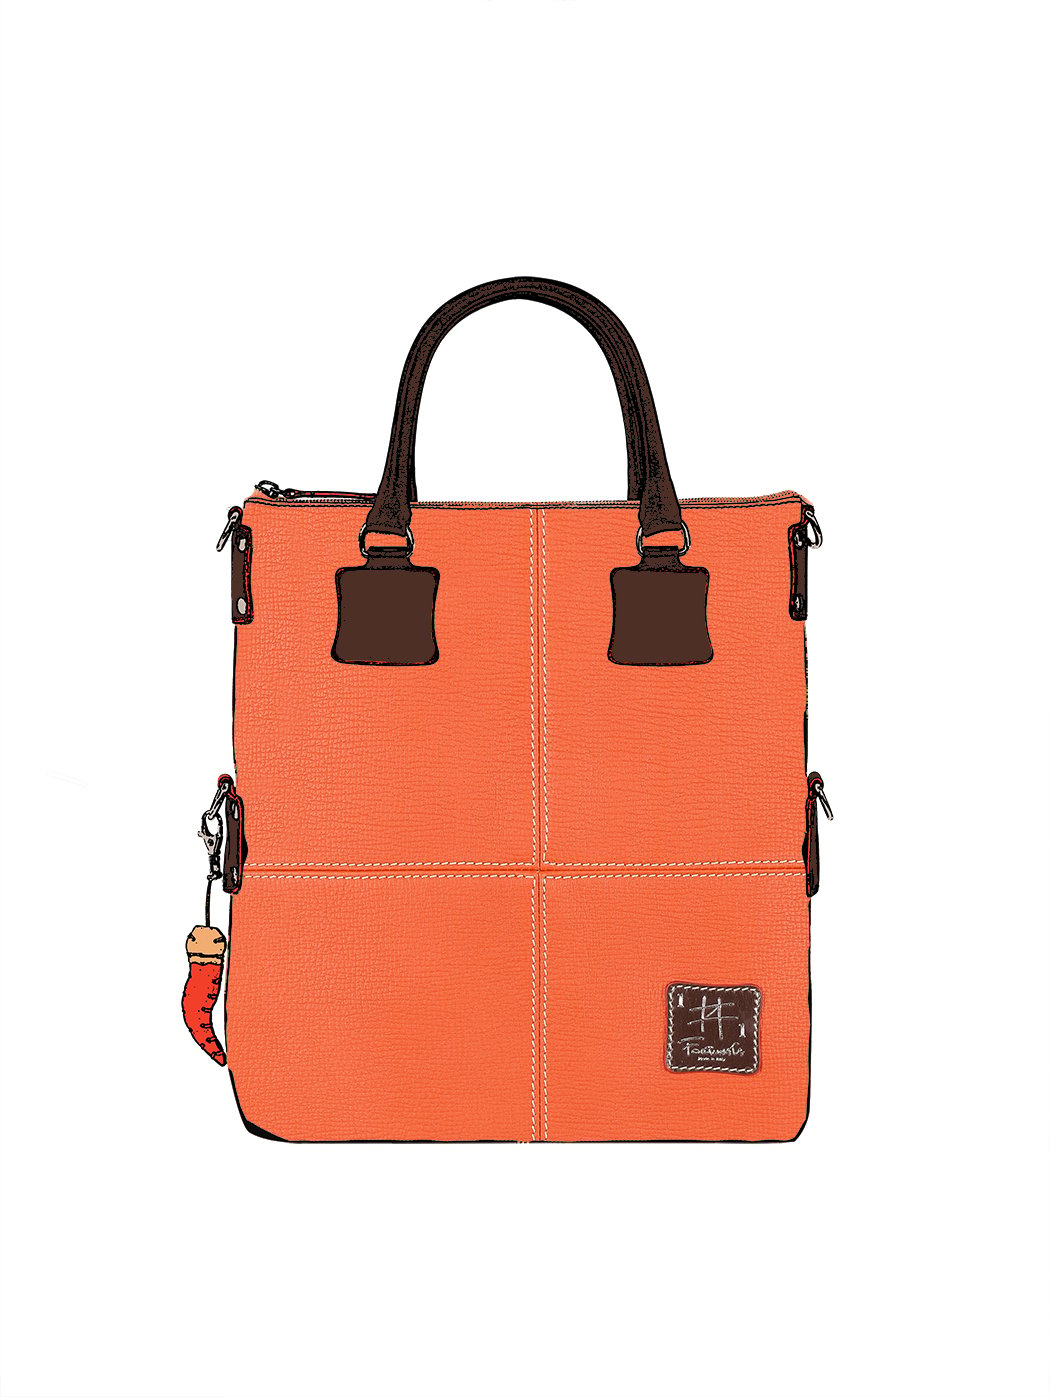 Дизайнерская сумка из коллекции Fortunata оранжевого цвета